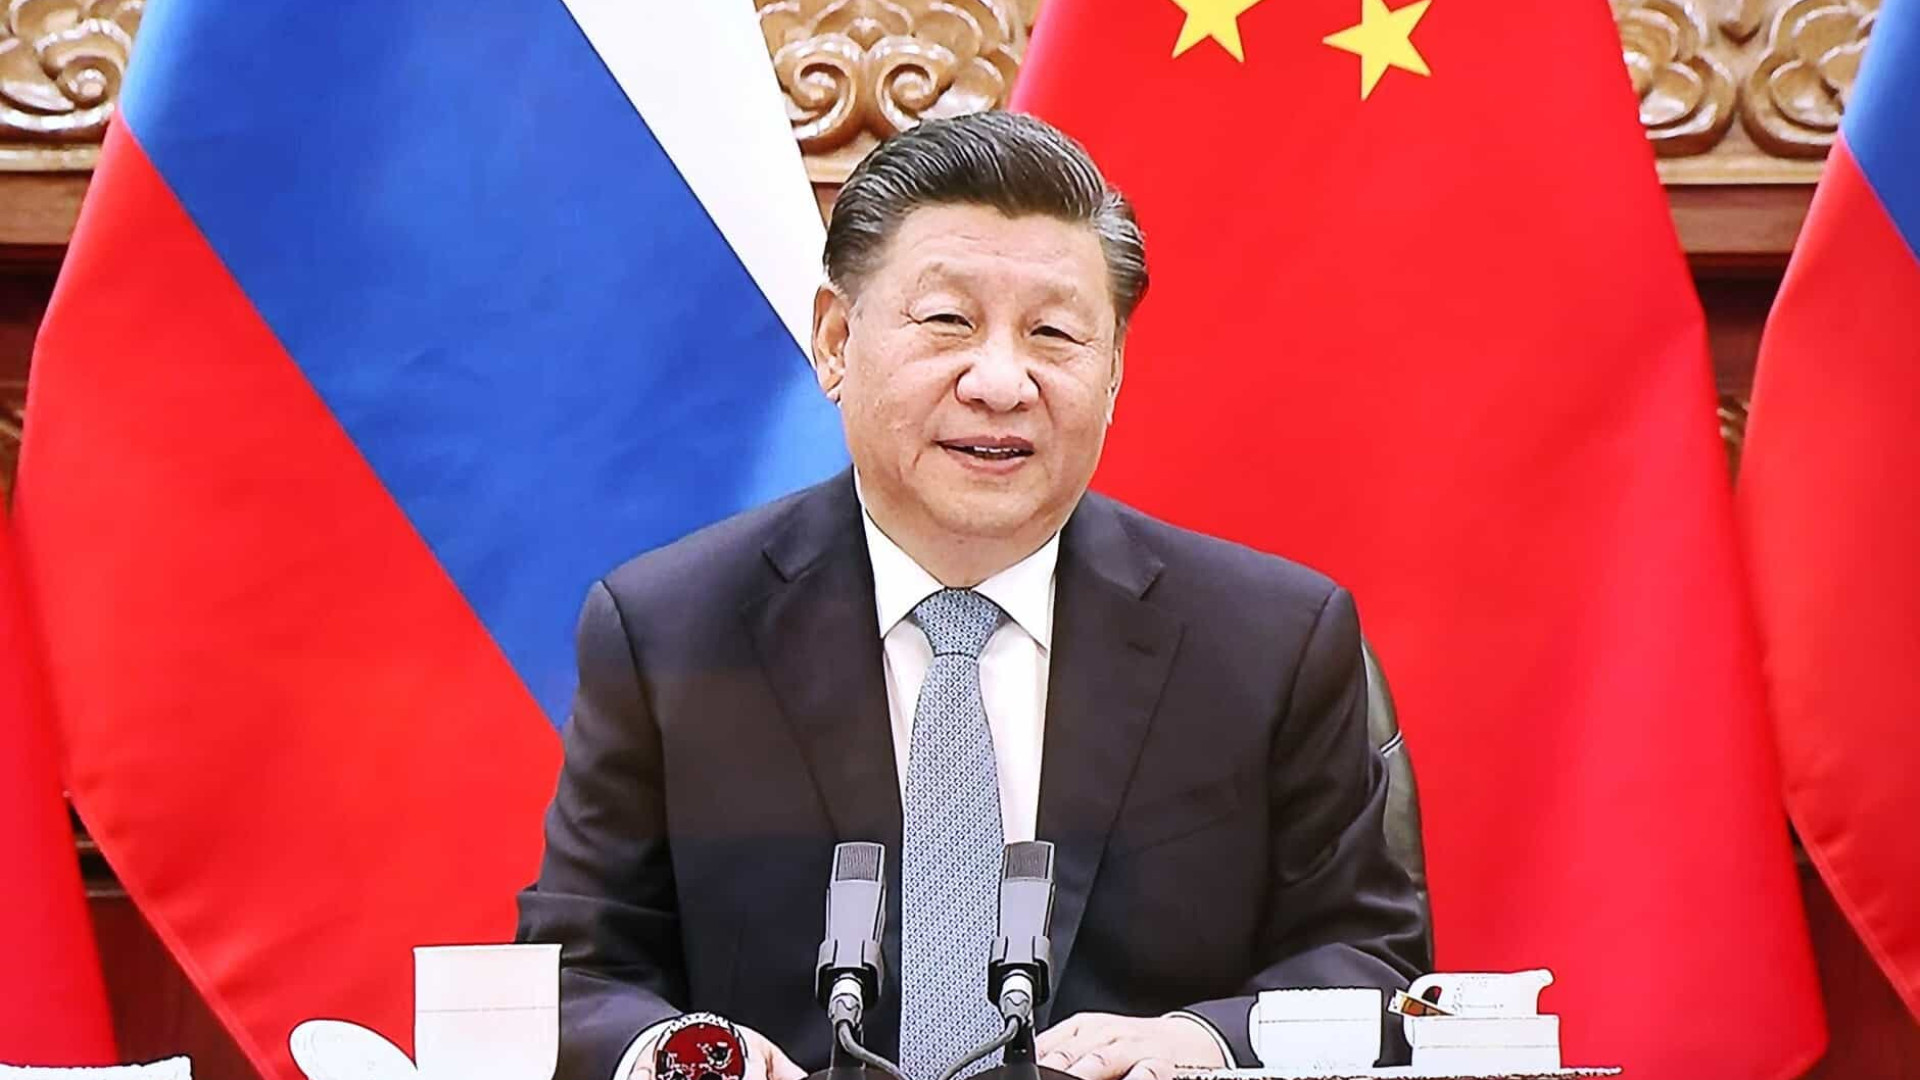  Xi Jinping diz que nenhum país se encaixa no ideal de direito humanos